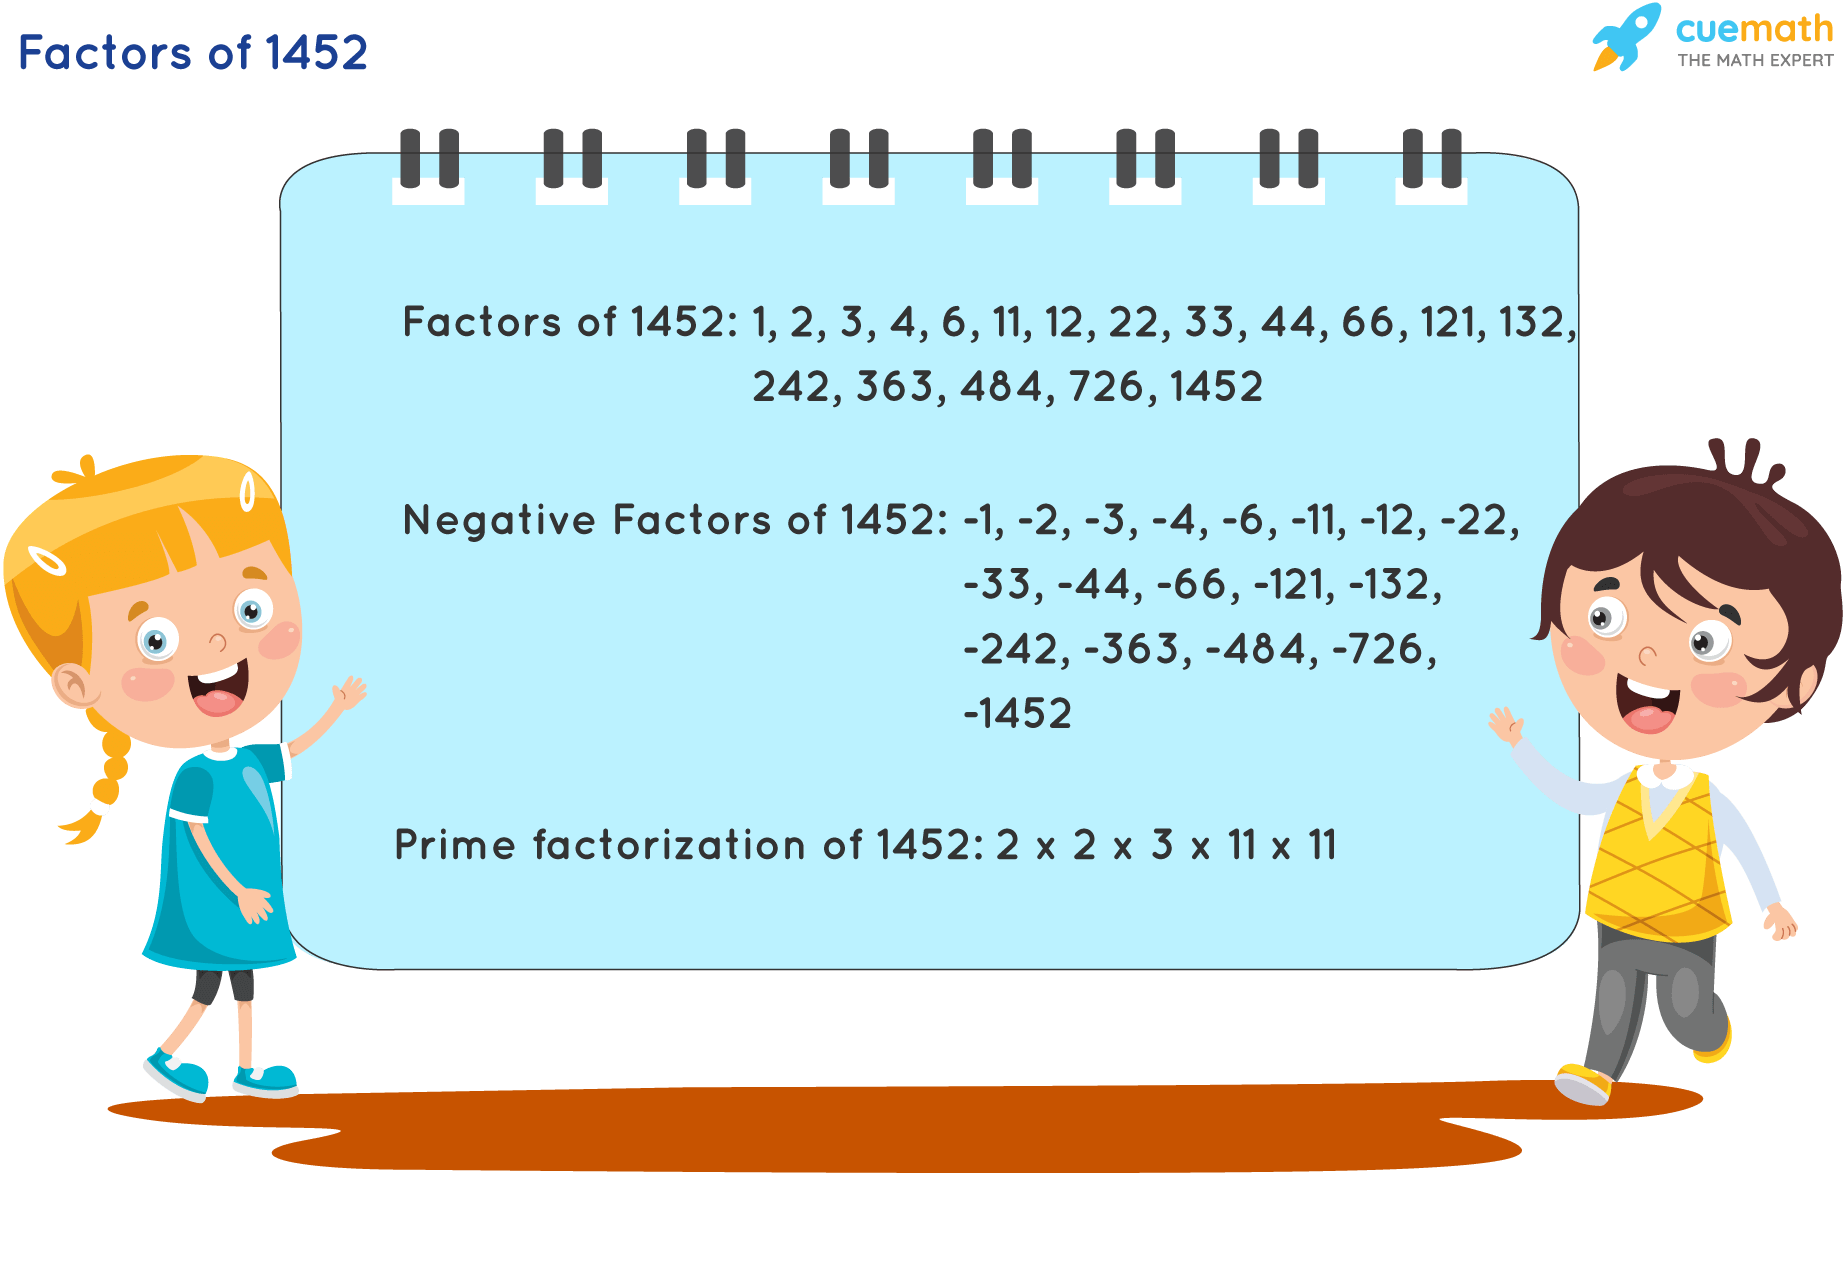 Factors of 1452